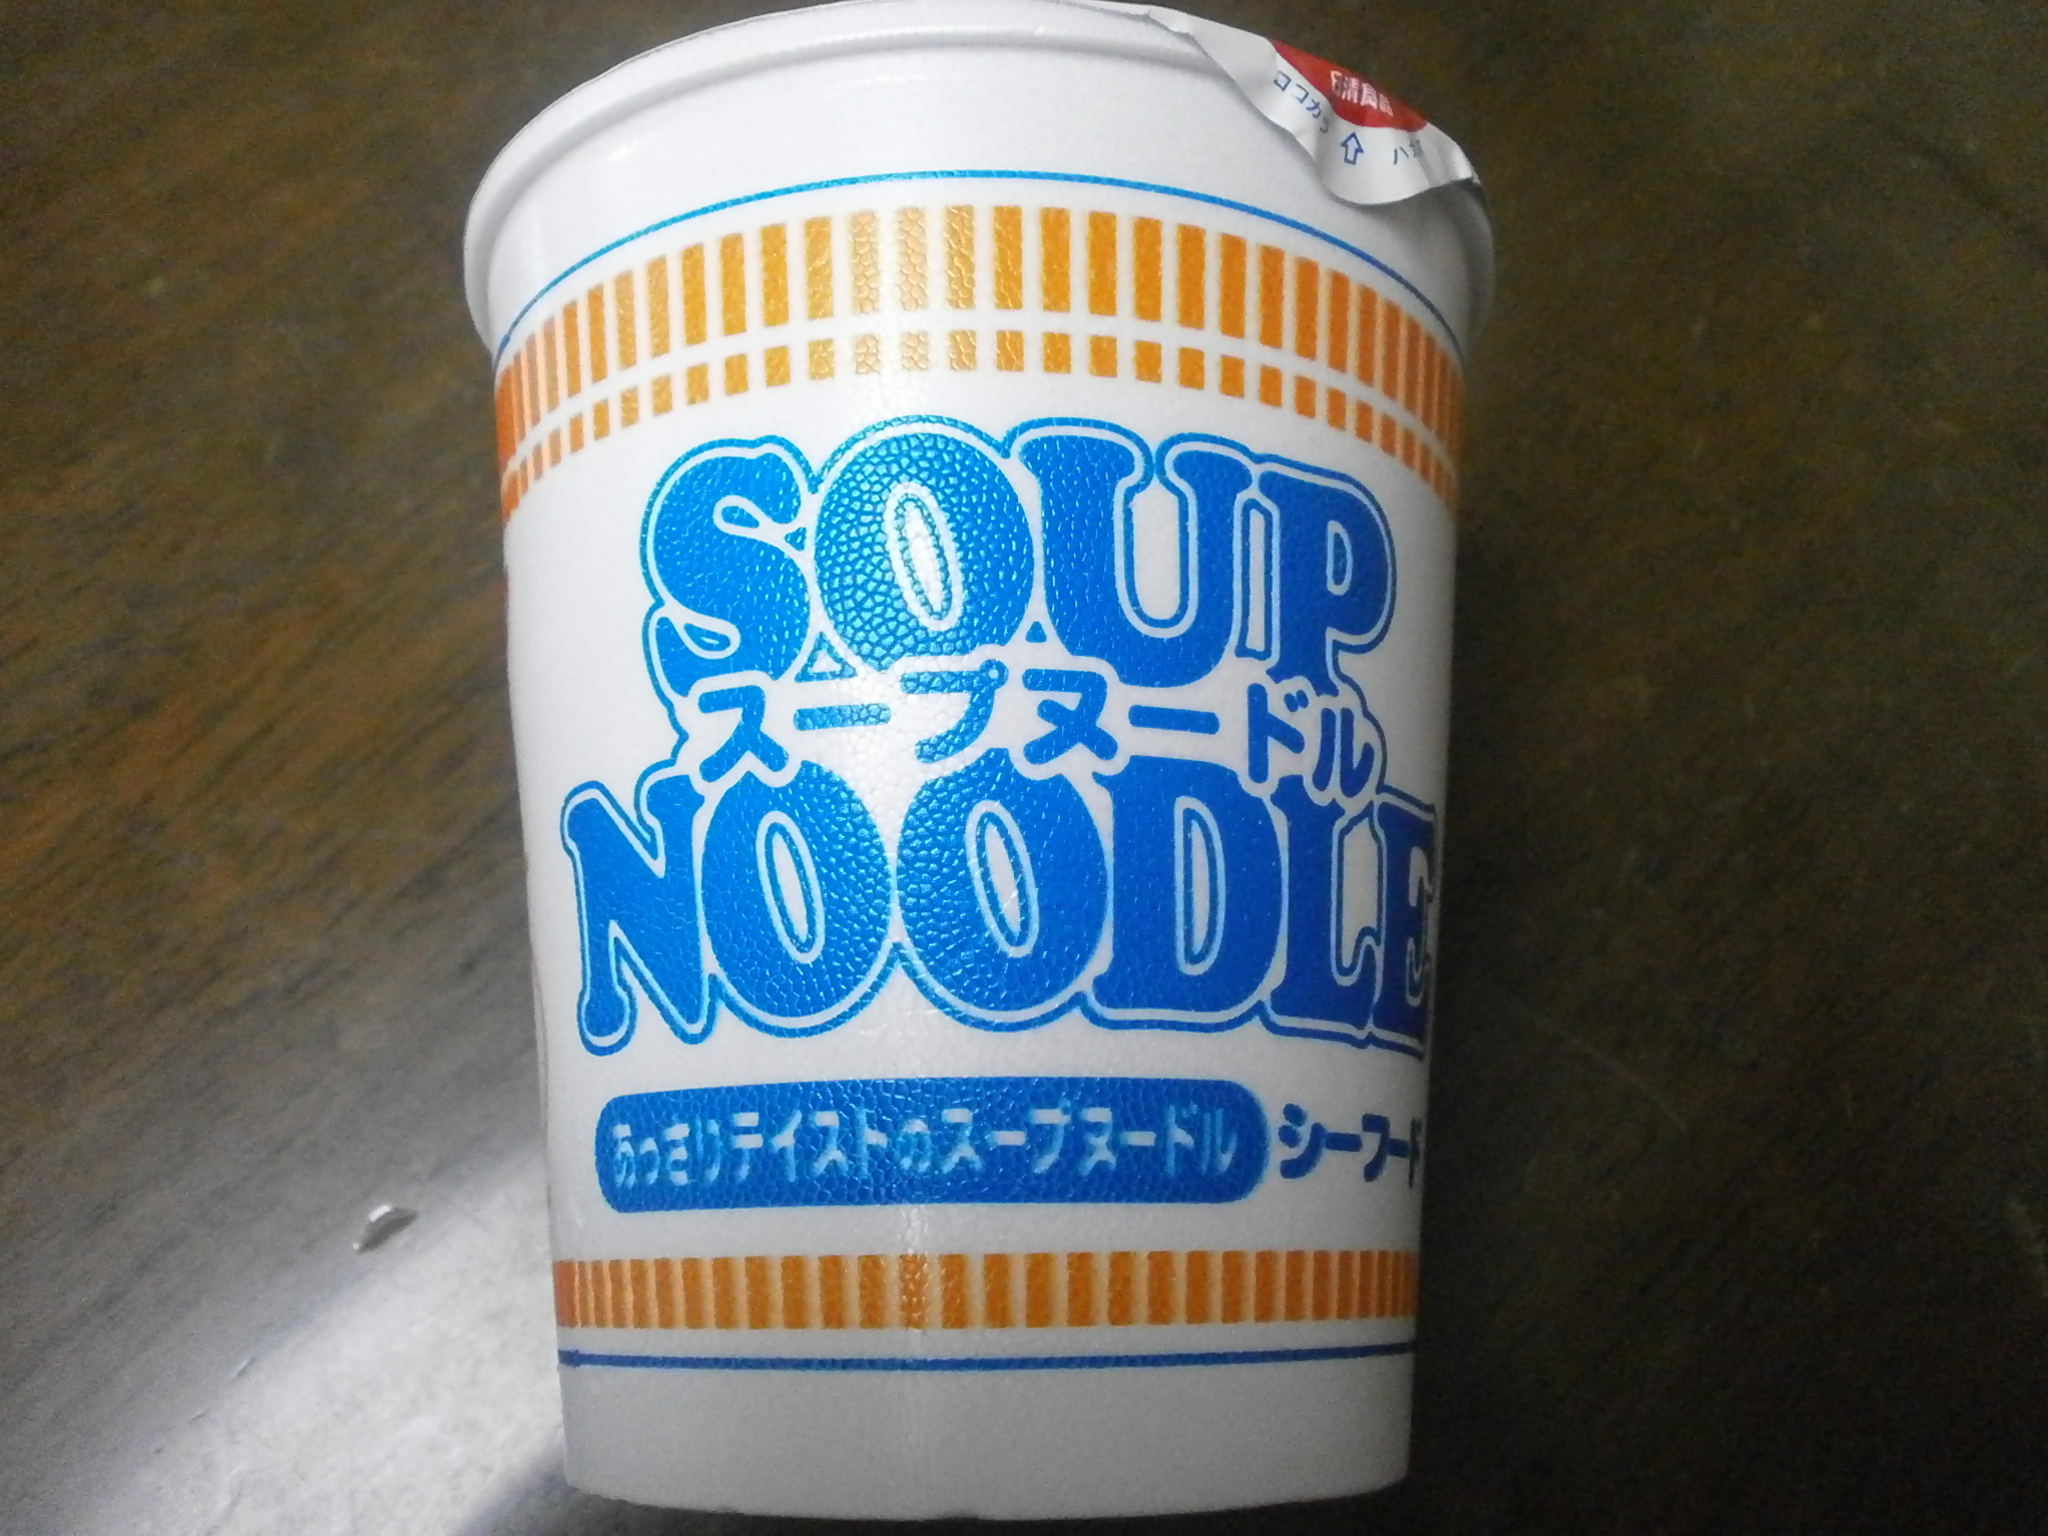 Which high-calorie? Noodle soup? Noodle soup (seafood)?